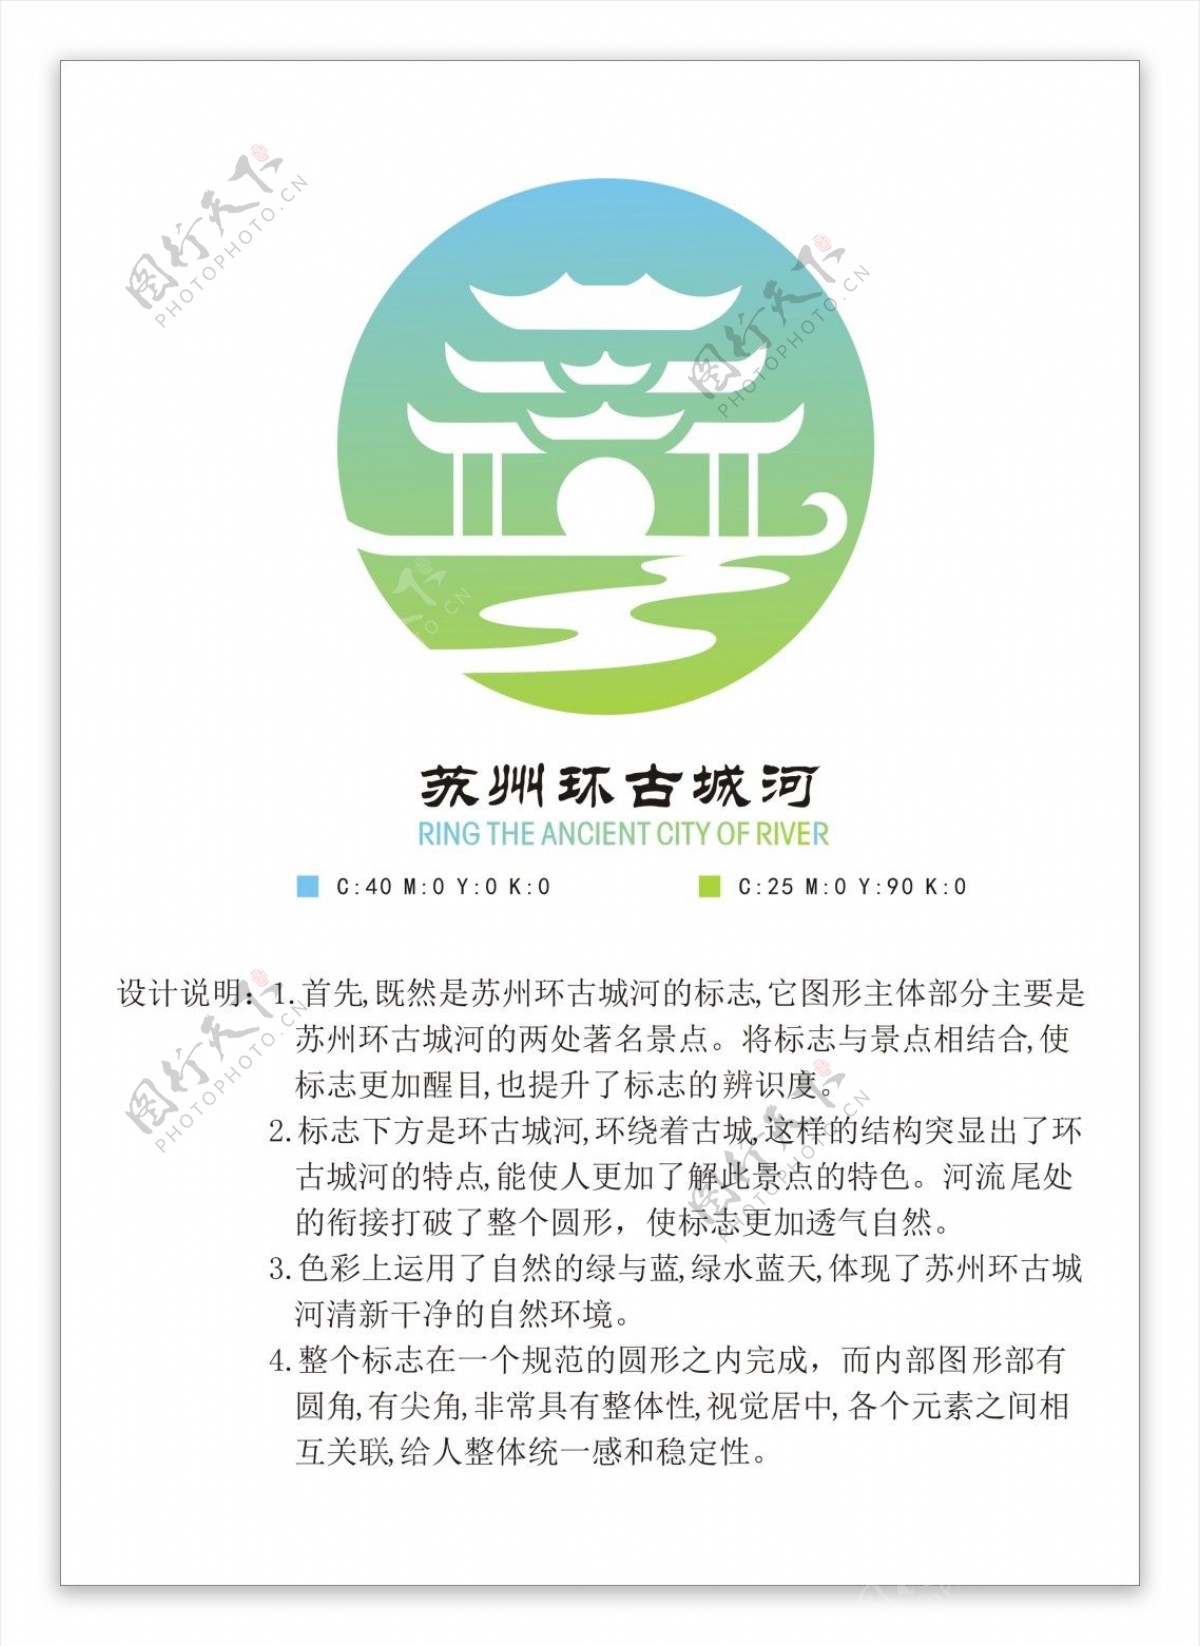 苏州环古城河标志参赛作品